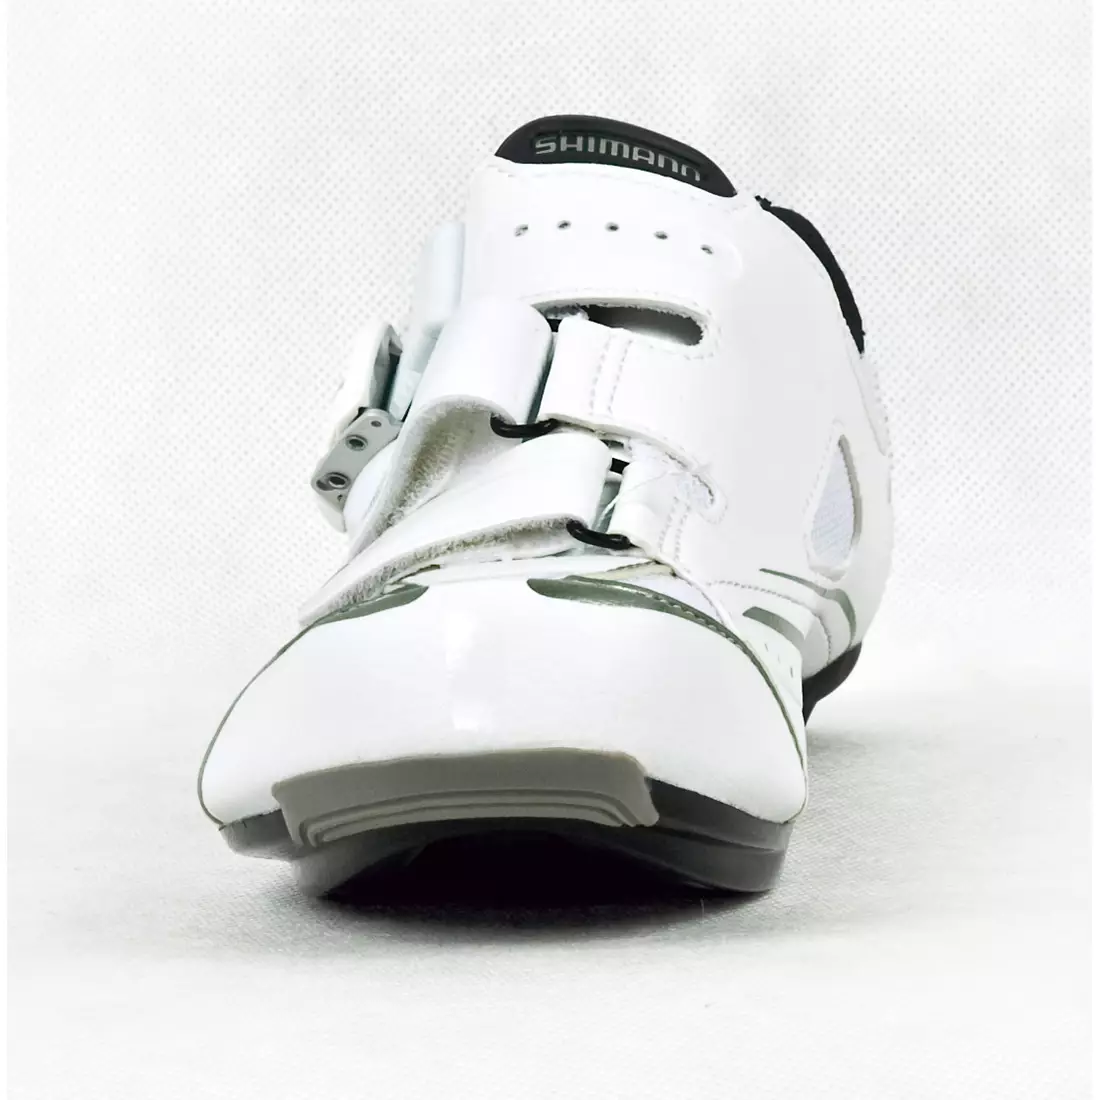 SHIMANO SH-WR42 - dámska cestná obuv, farba: biela